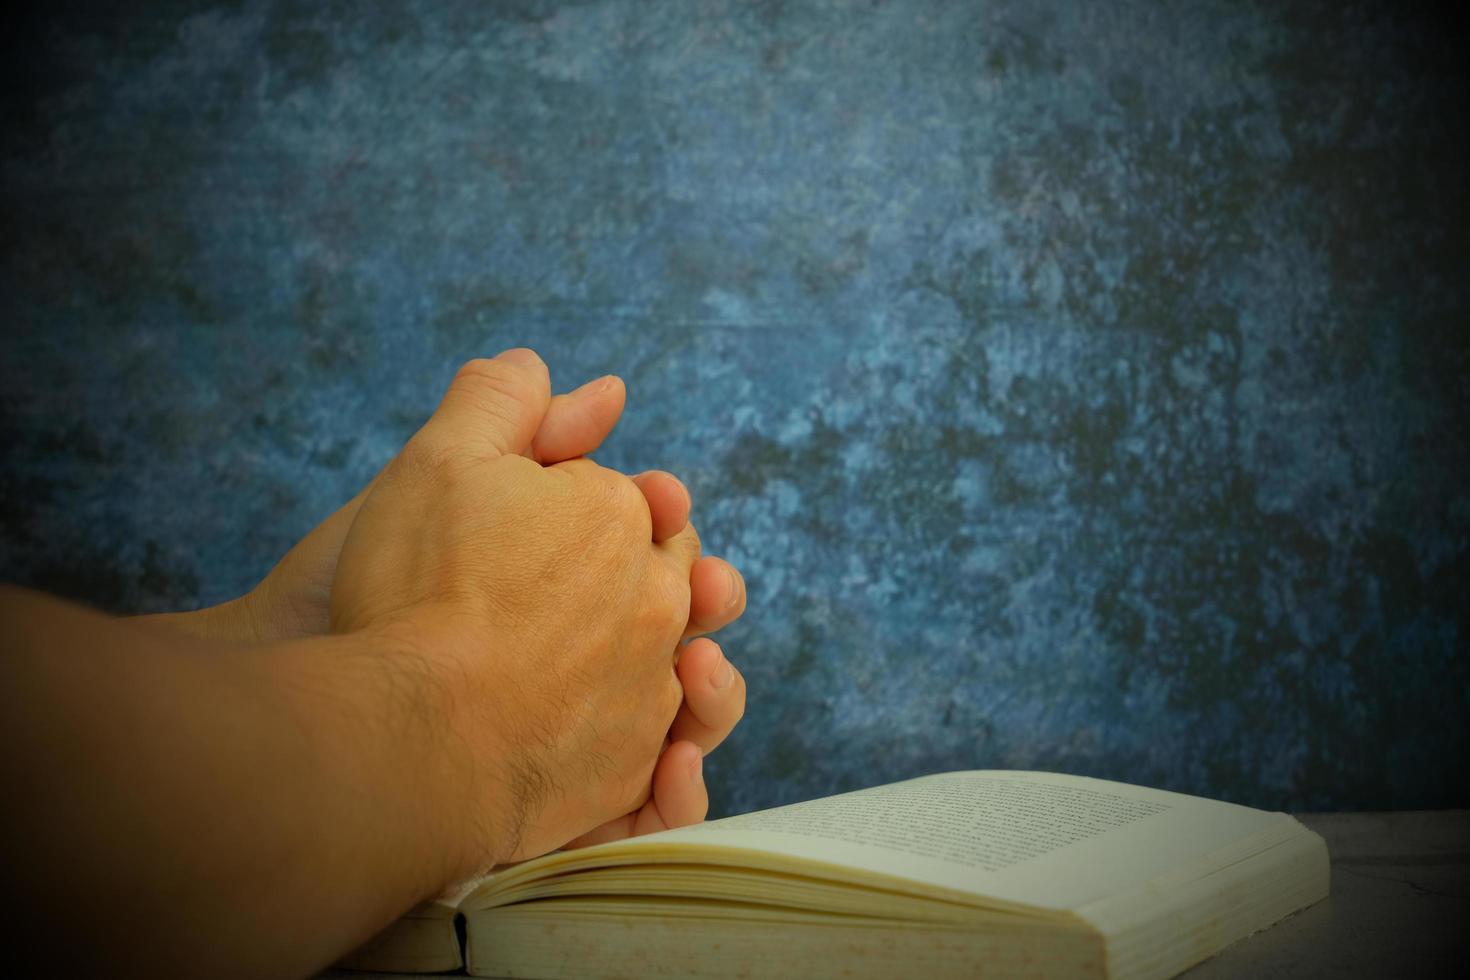 Hände gefaltet im Gebet auf einer heiligen bibel in einem kirchlichen Konzept für Glauben, Spiritualität und Religion, mit einer Frau, die morgens auf der heiligen bibel betet. frau, die mit bibel in der hand betet foto